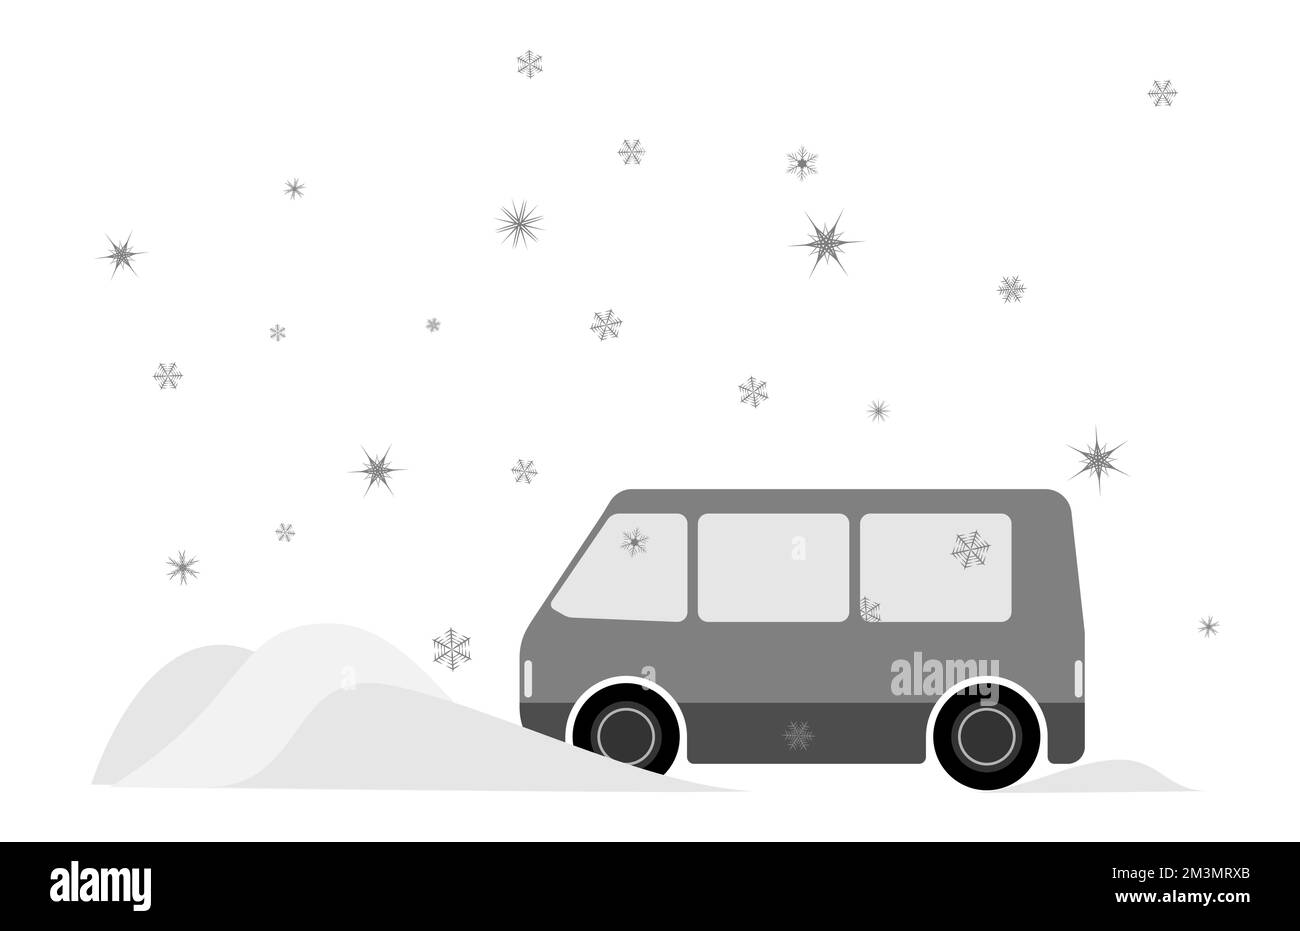 Ein Minibus, der in einer Schneeverwehung steckt. Winterfahrten. Säubern von schneebedeckten Geräten. Stock Vektor